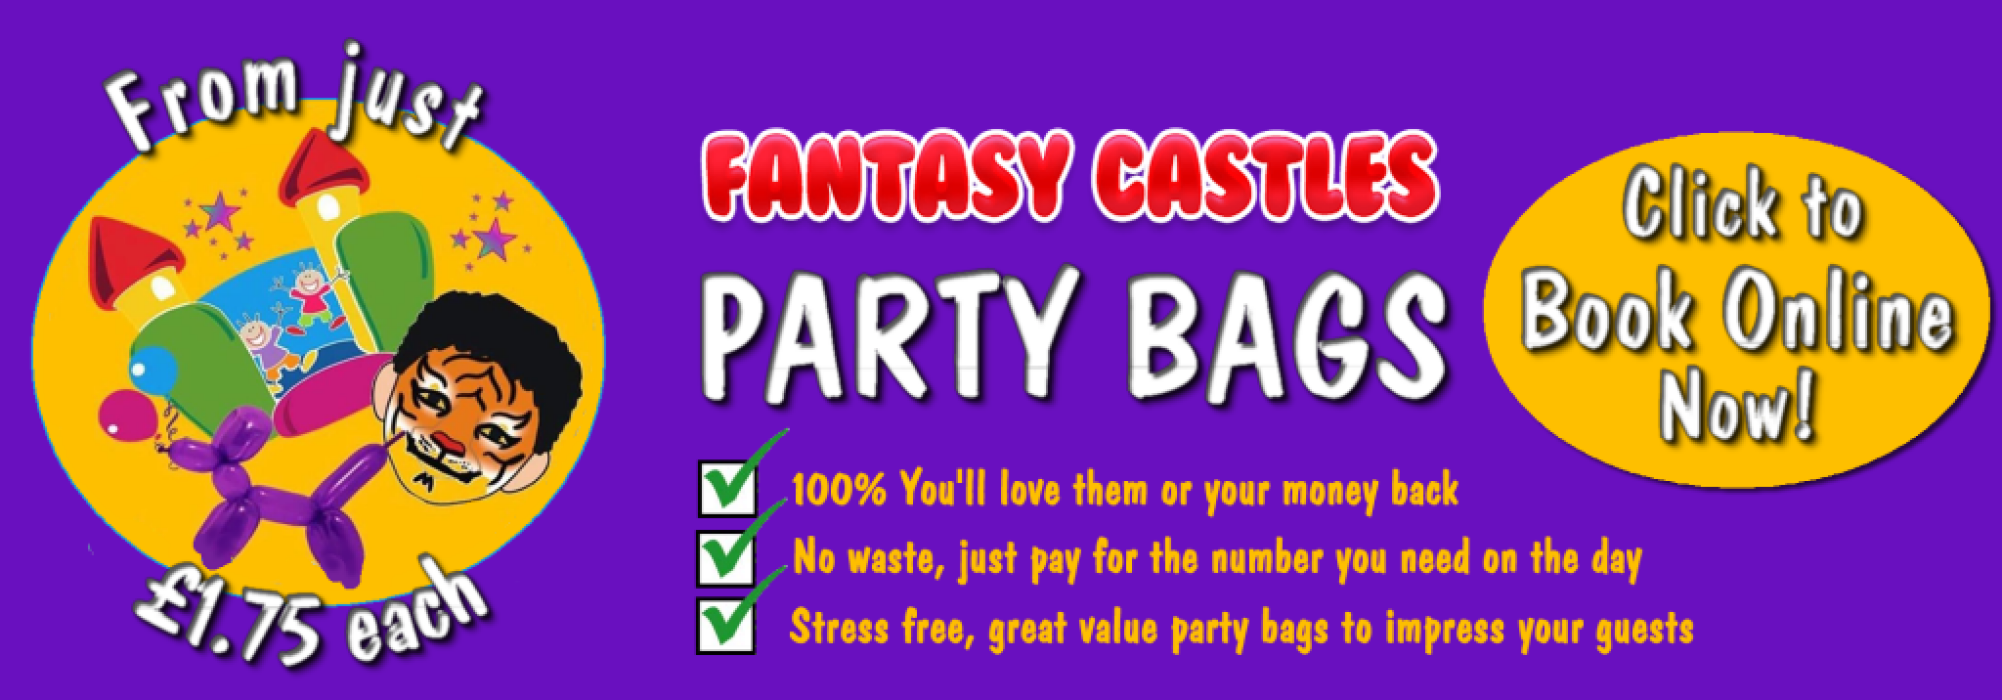 Fantasy Castles Party Bags